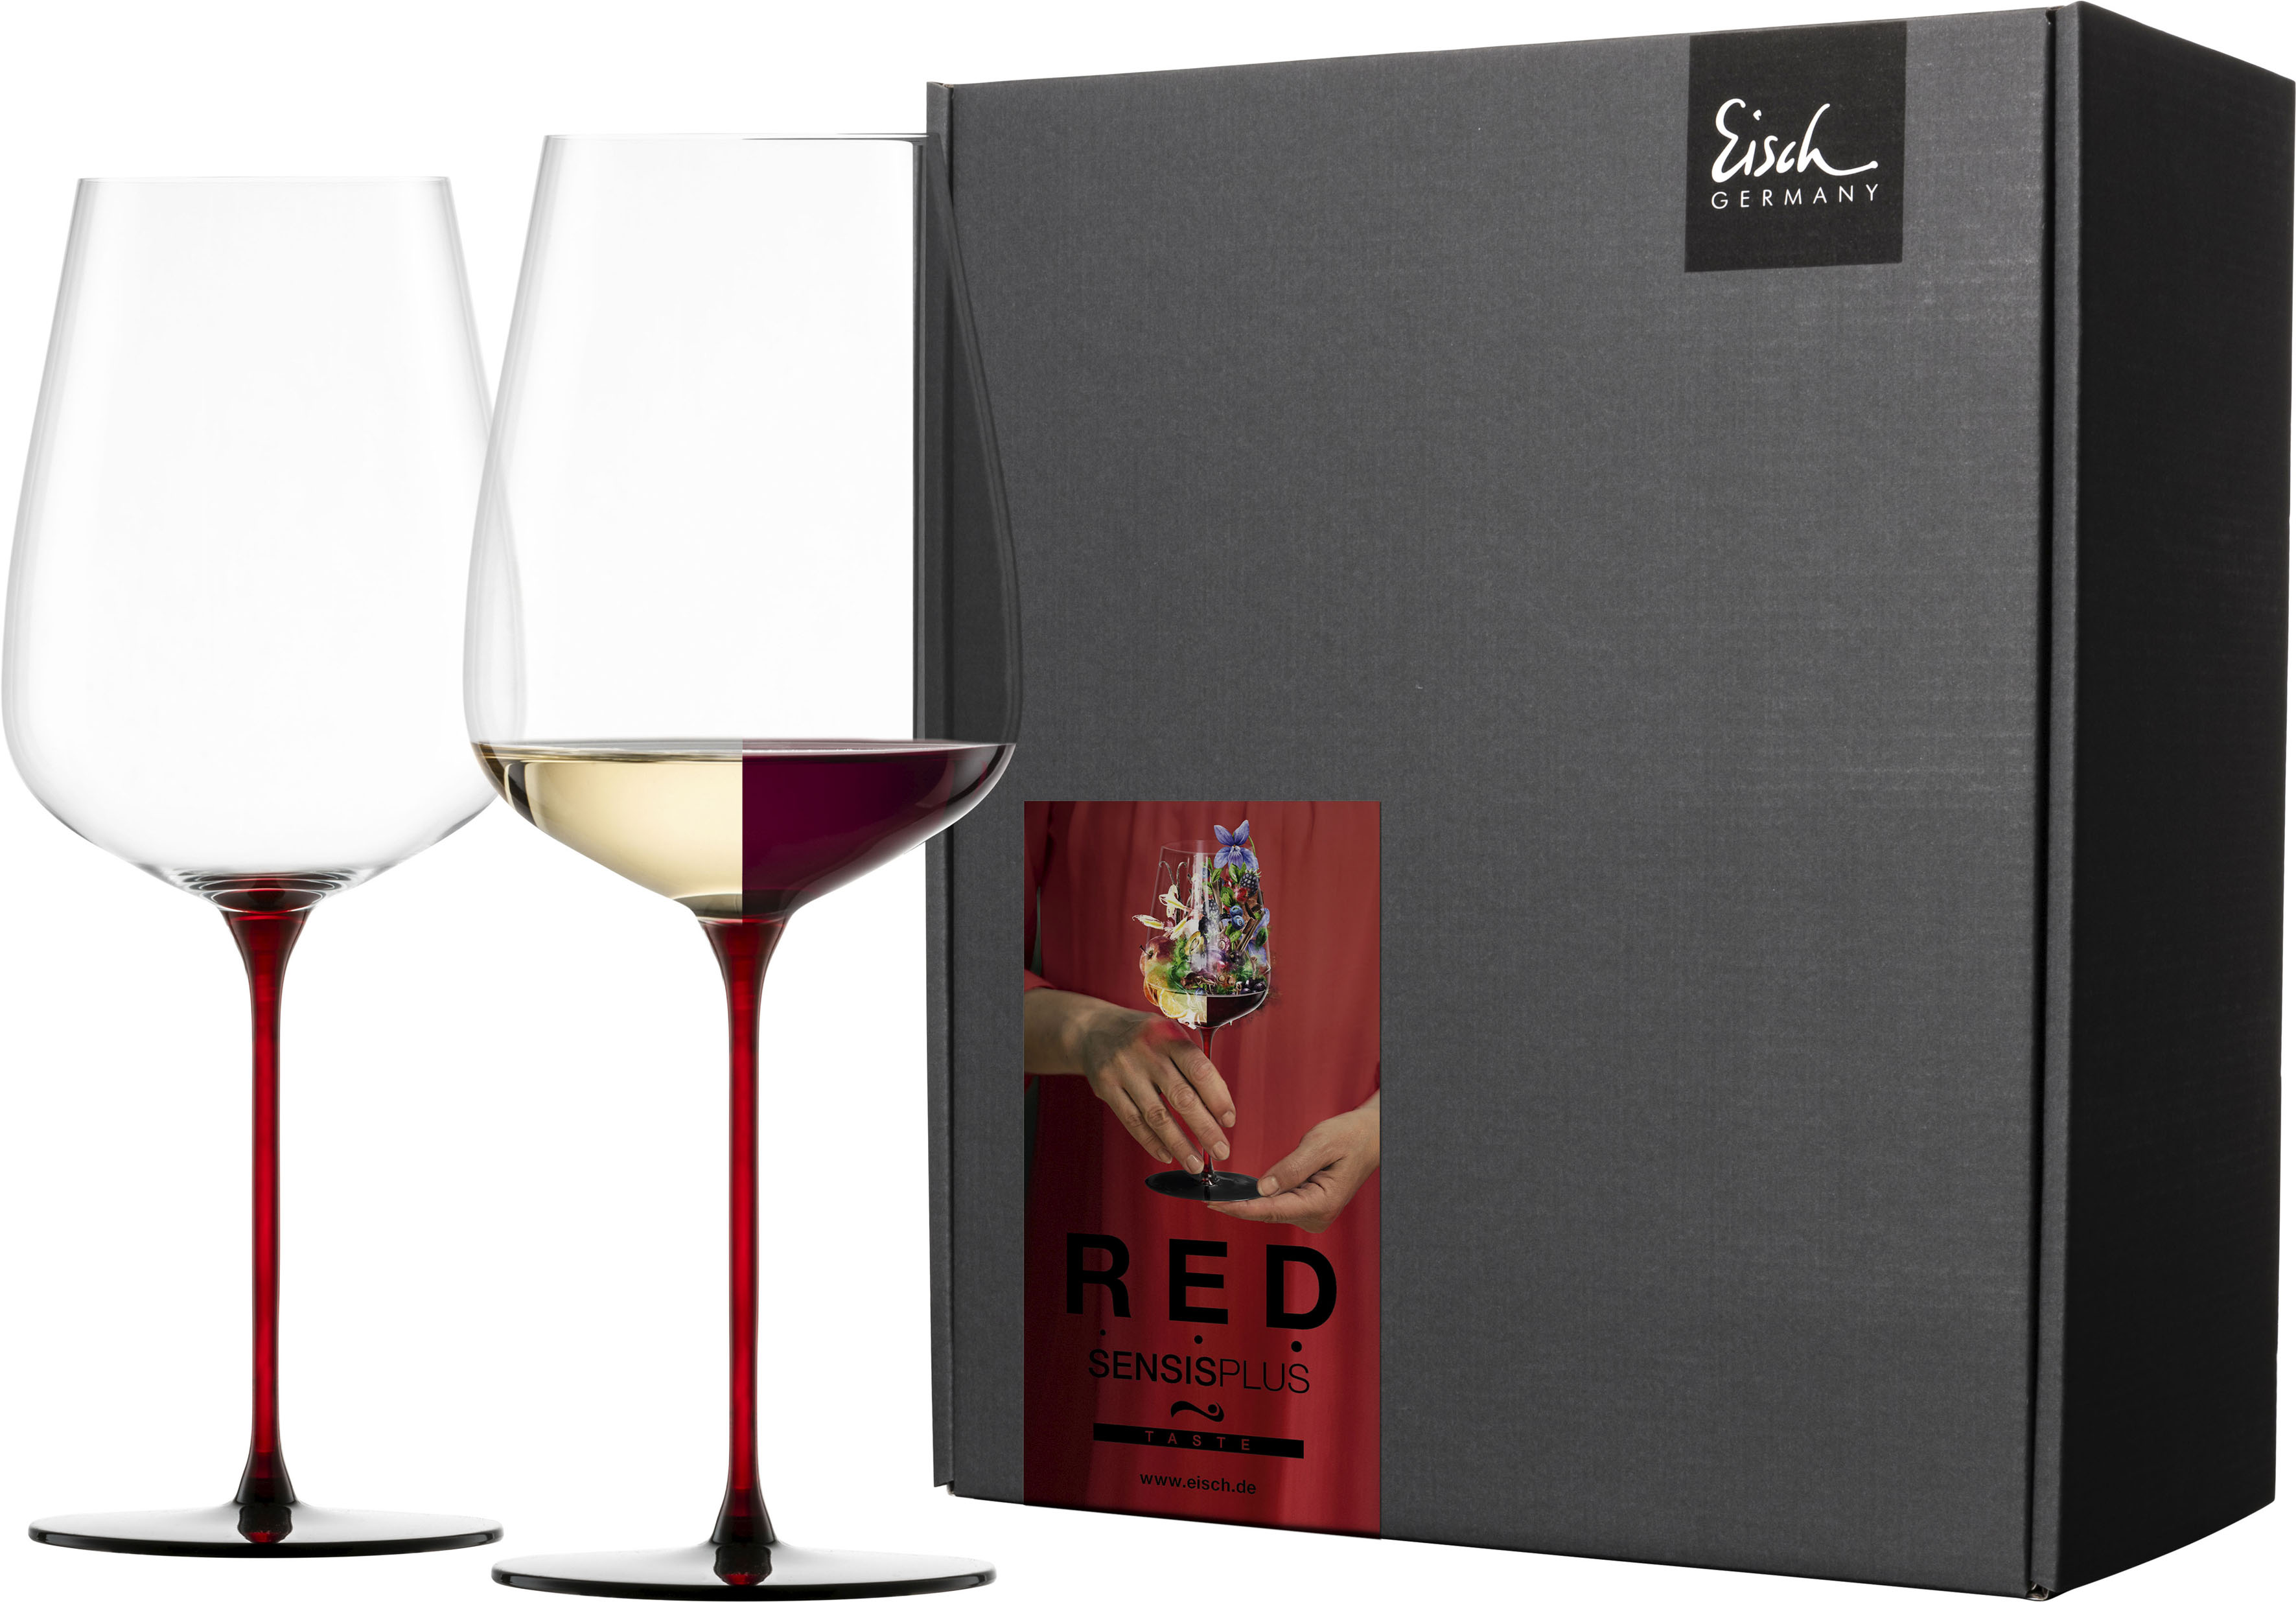 Eisch Weinglas »RED SENSISPLUS«, (Set, 2 tlg., 2 Gläser im Geschenkkarton), günstig online kaufen